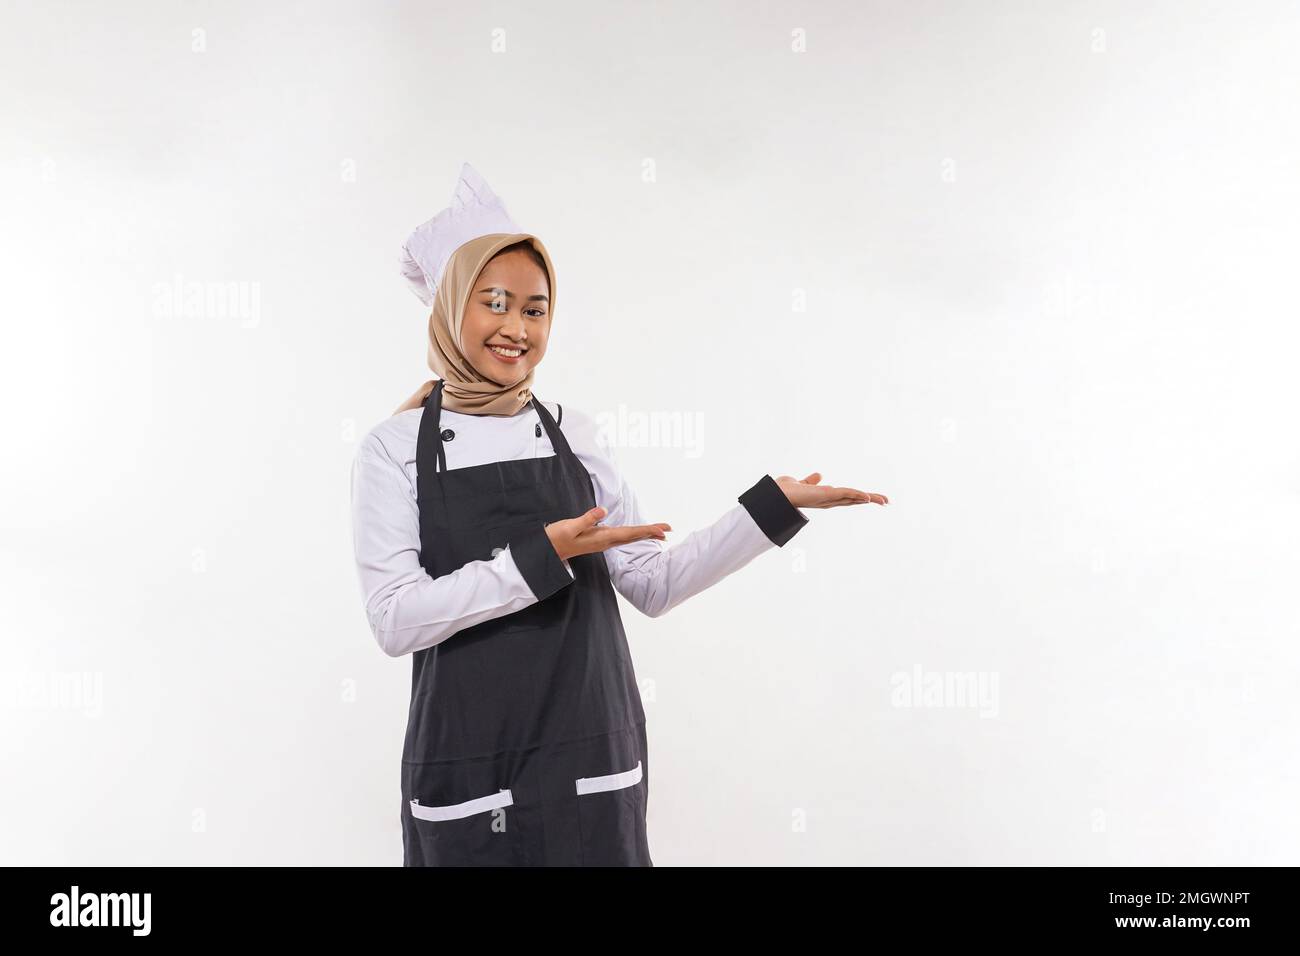 une jeune cuisinière avec hijab pointant sur son côté gauche Banque D'Images